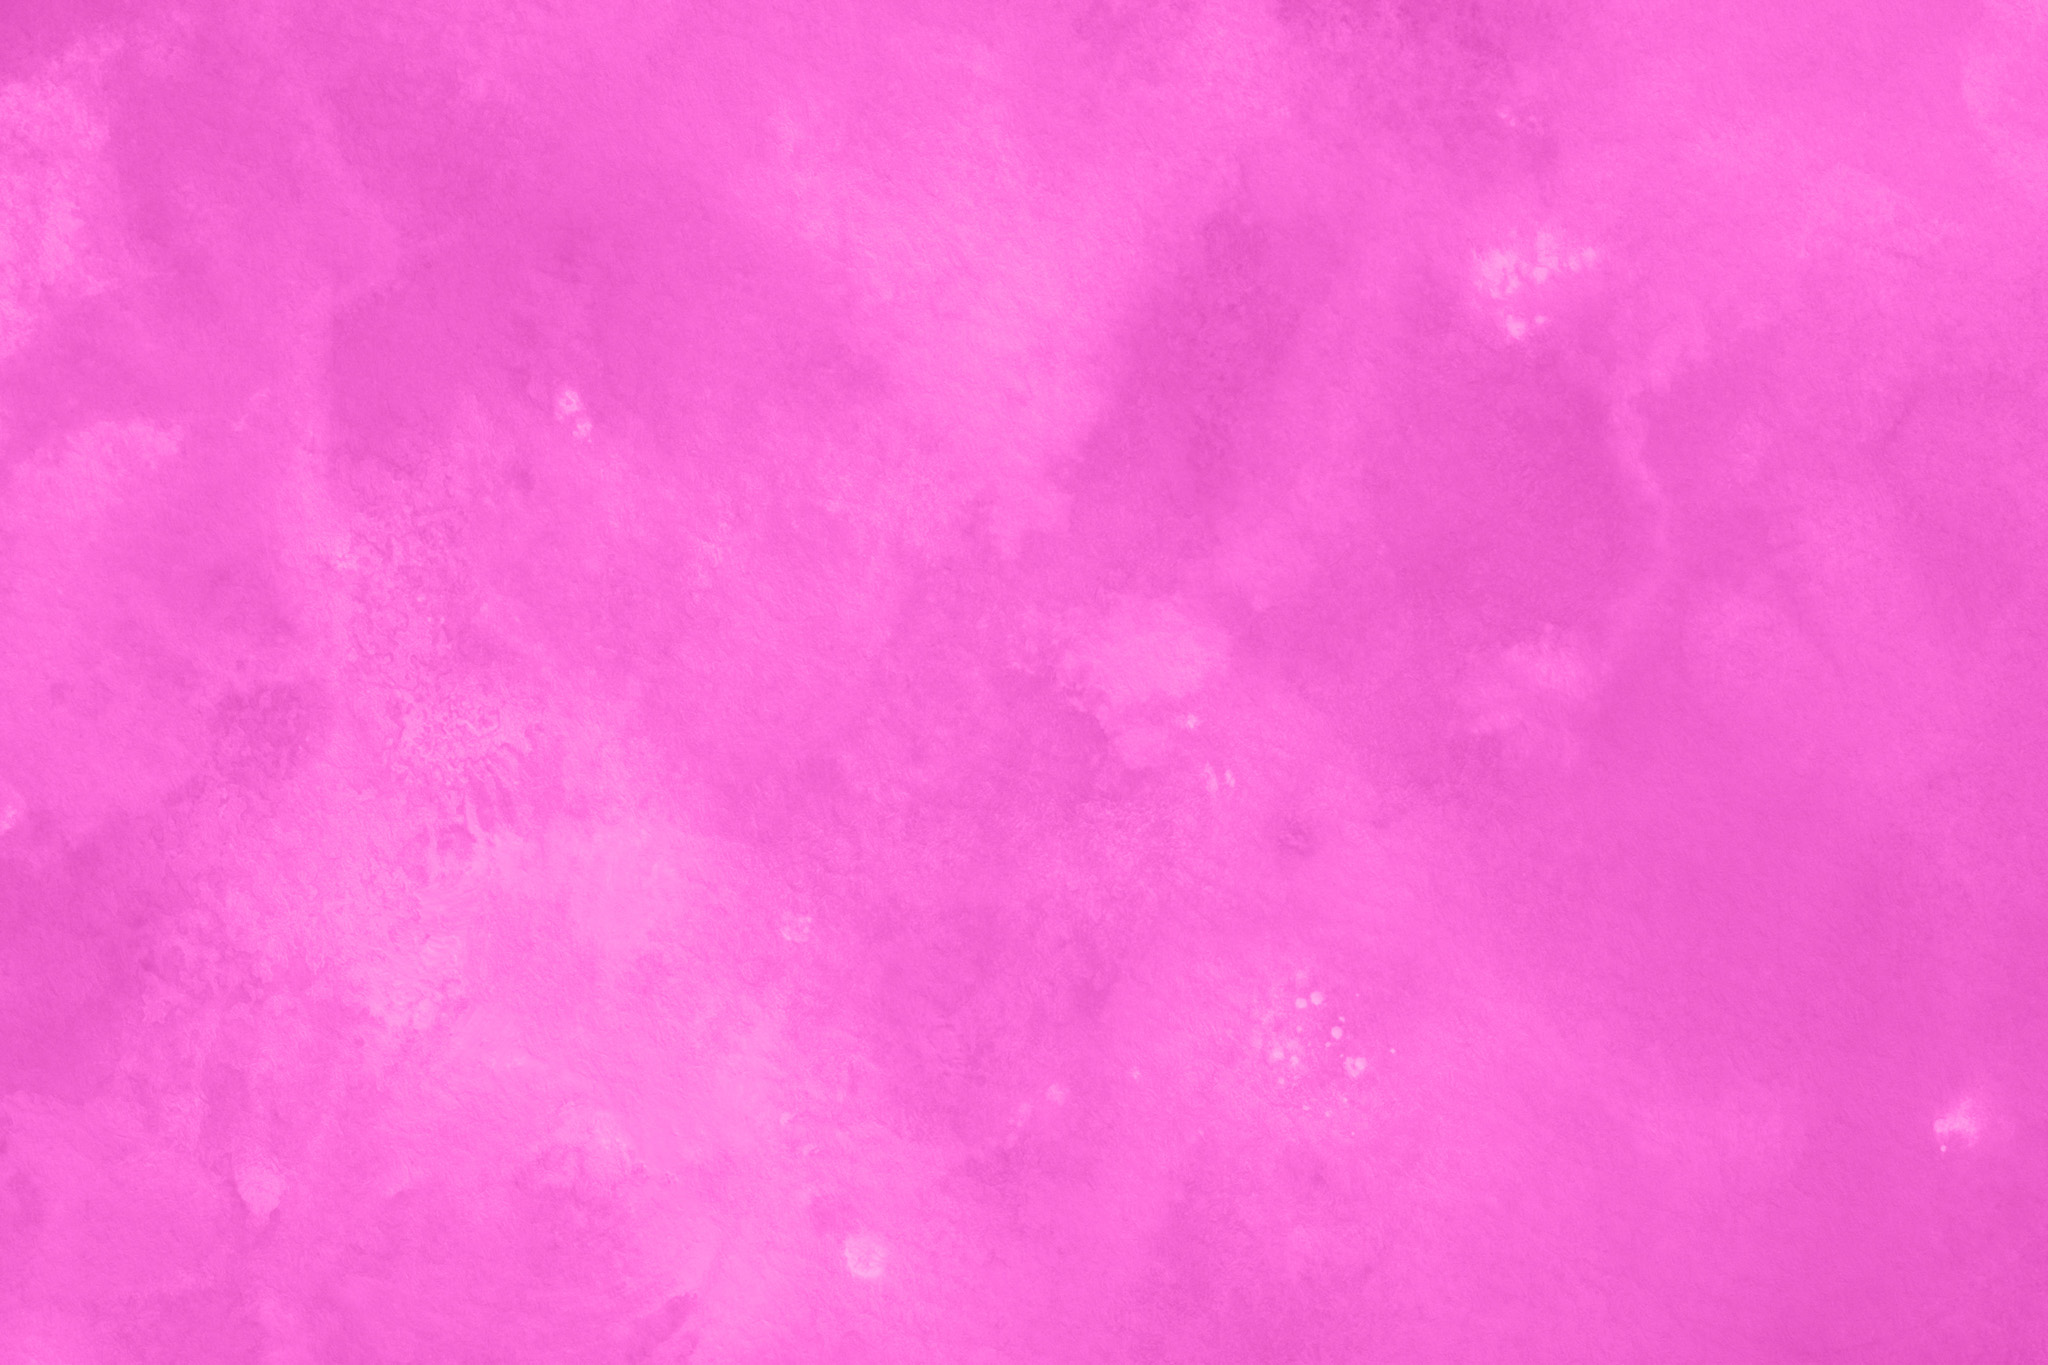 おしゃれなピンク色のかっこいい壁紙 の画像素材を無料ダウンロード 1 フリー素材 Beiz Images